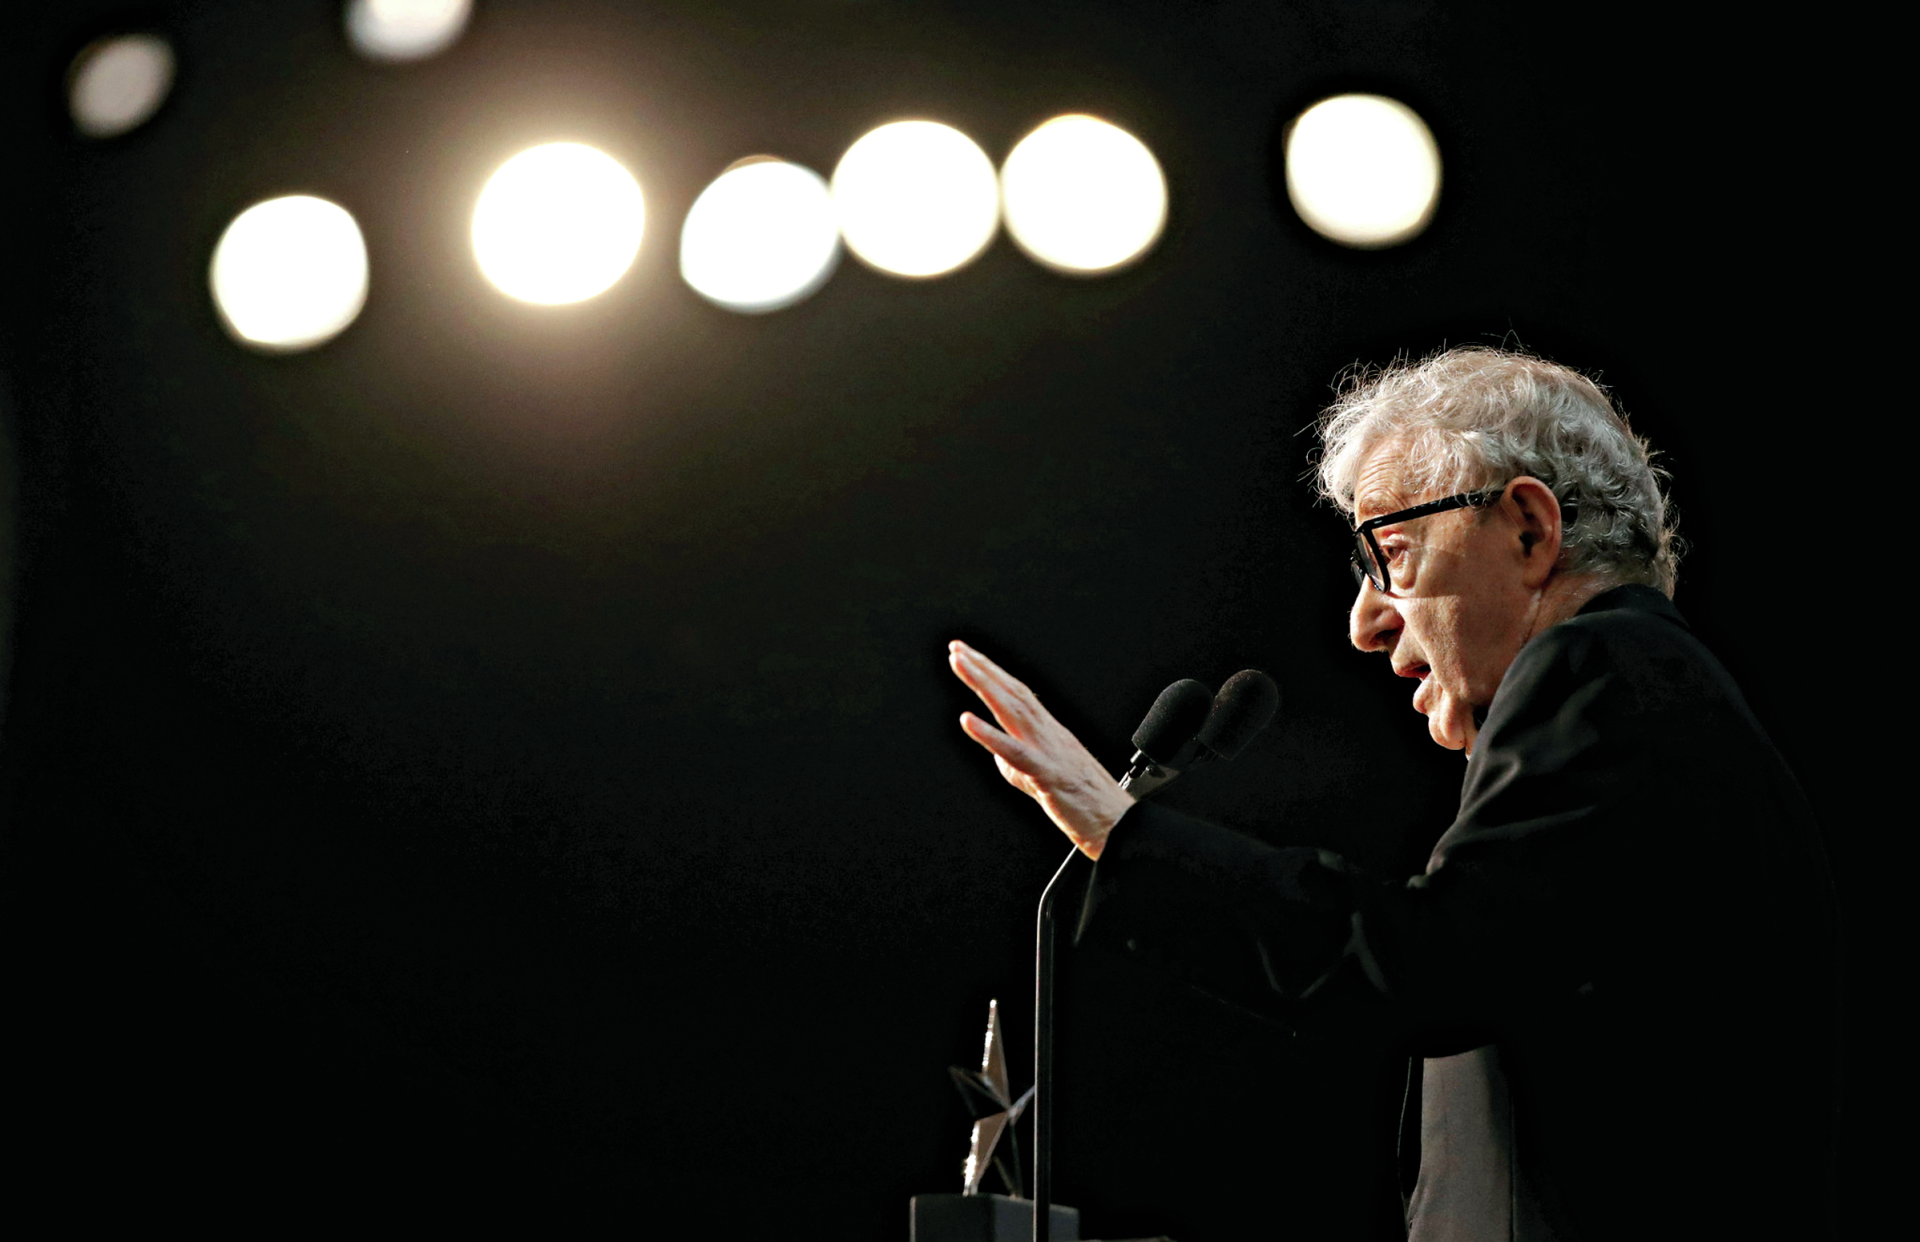 Woody Allen. Uma reforma “forçada” e uma reputação deteriorada